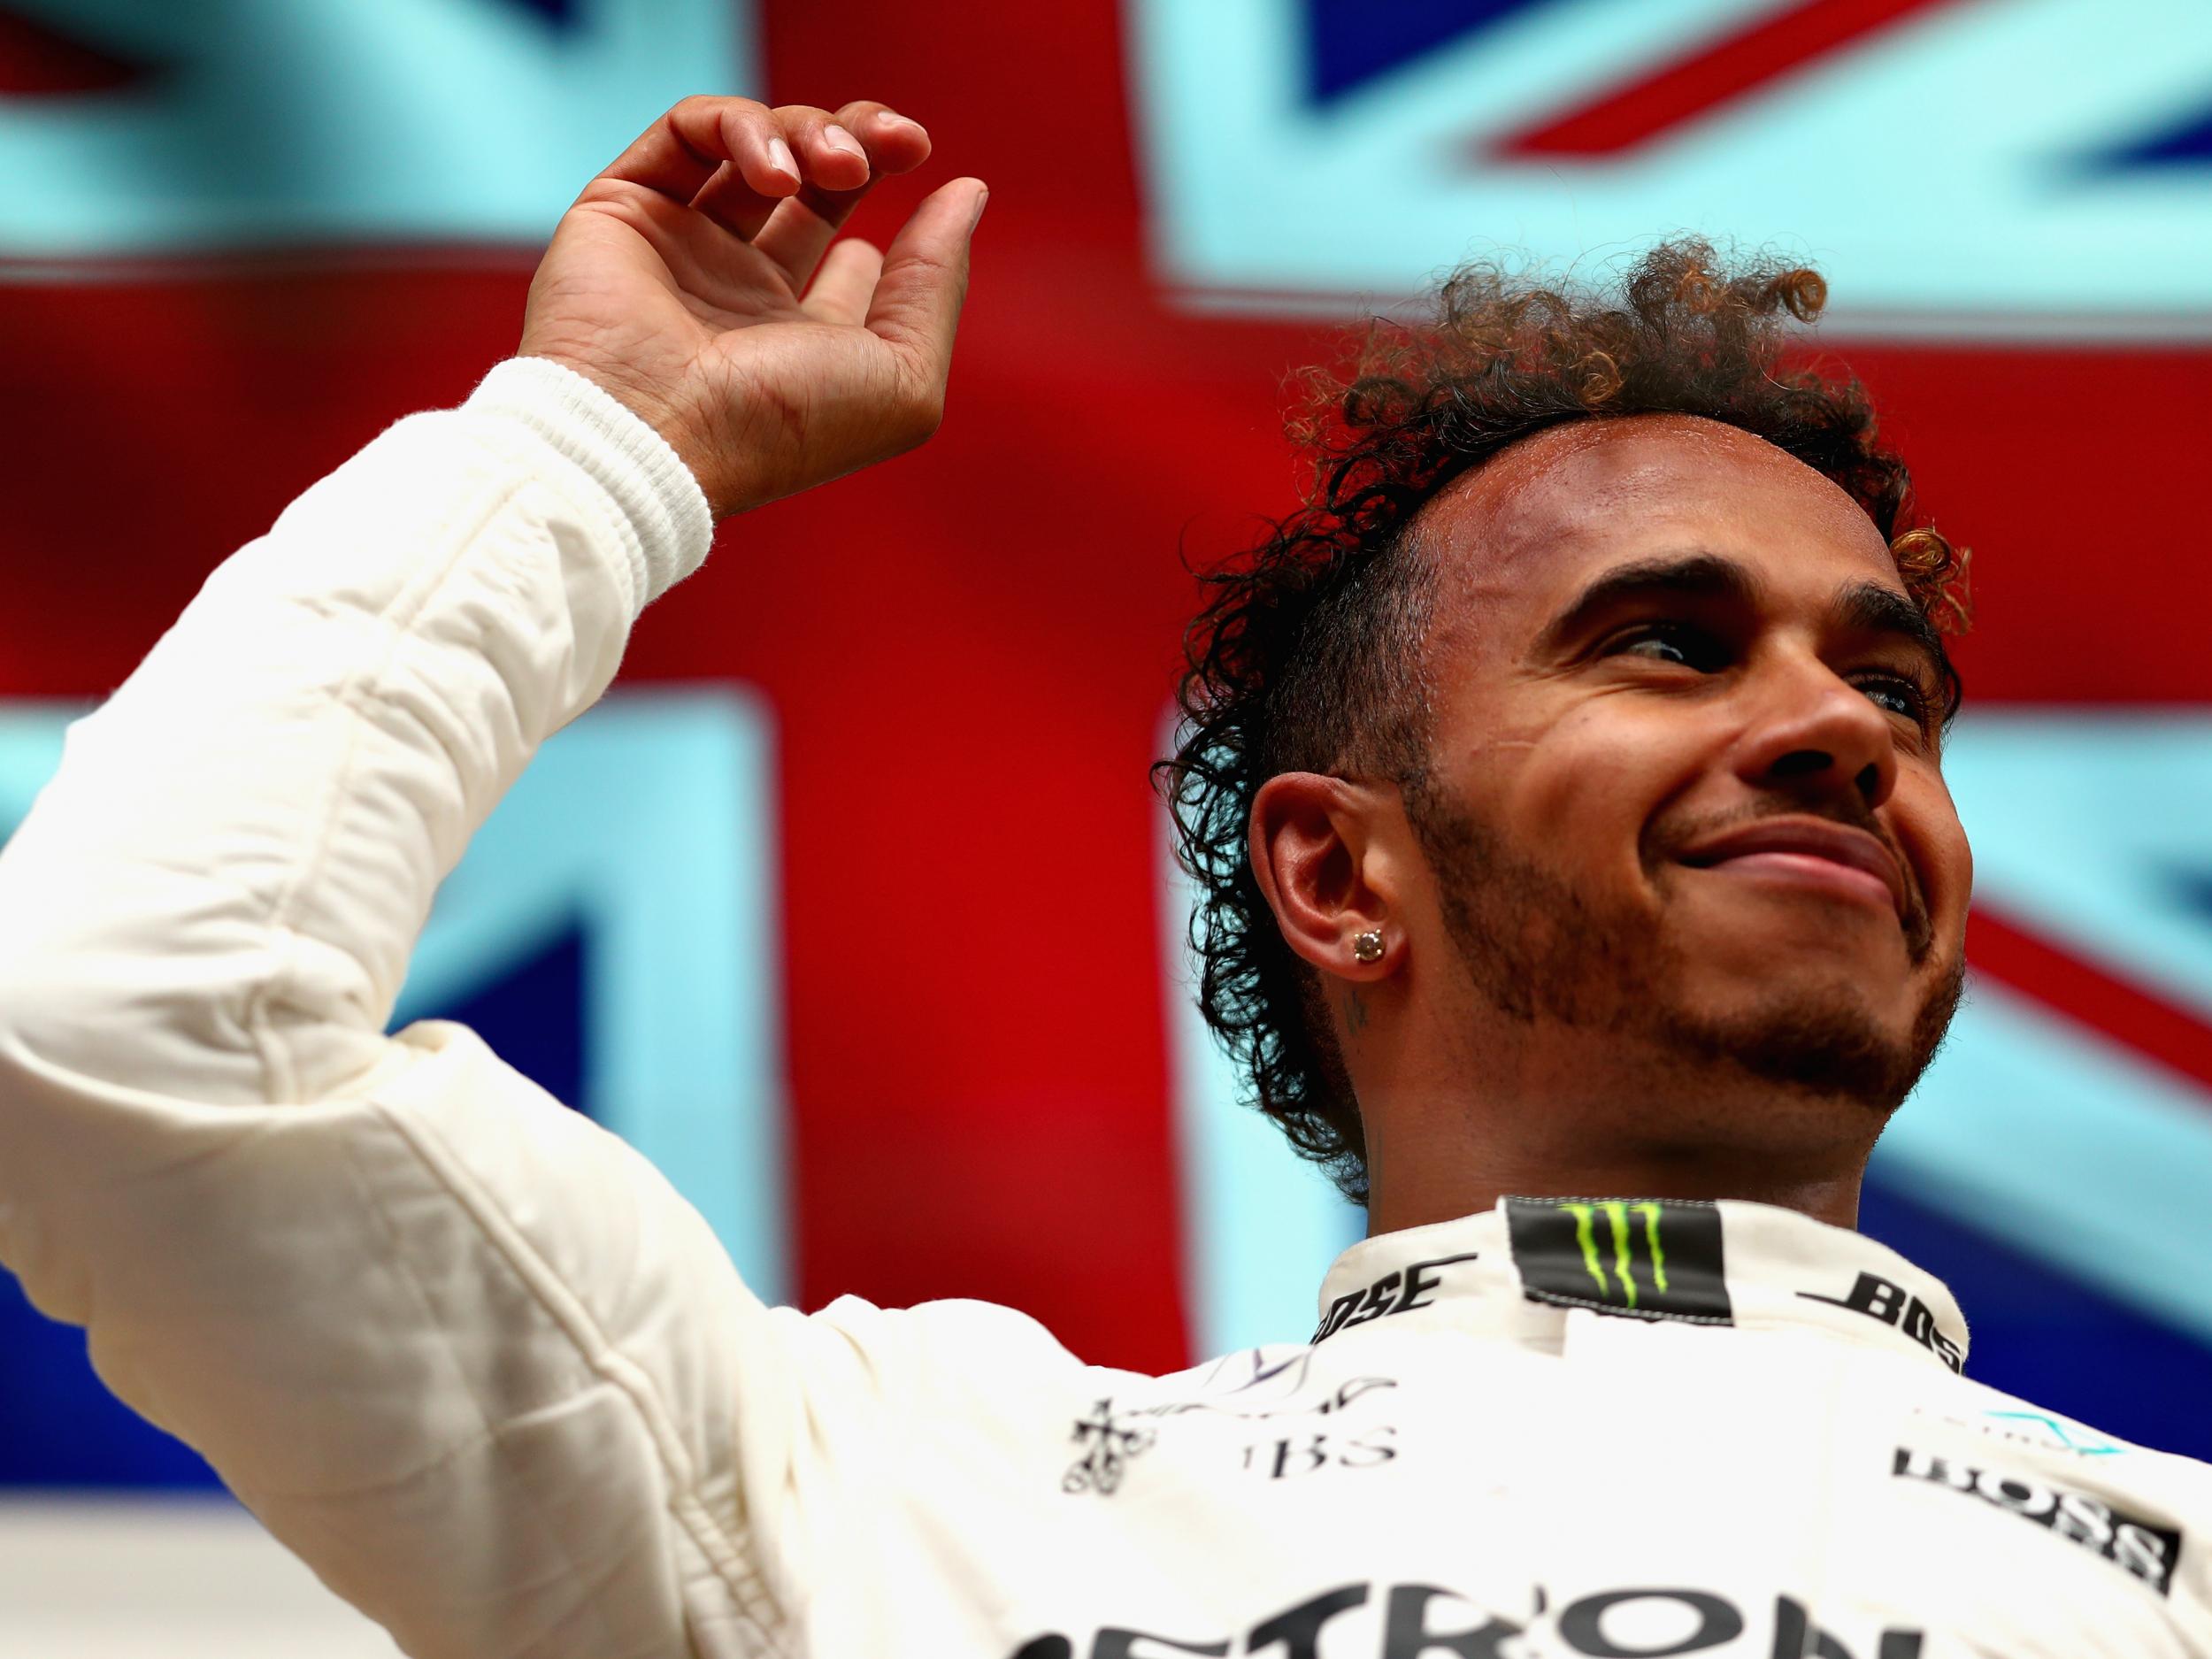 Hamilton won on his 200th career race